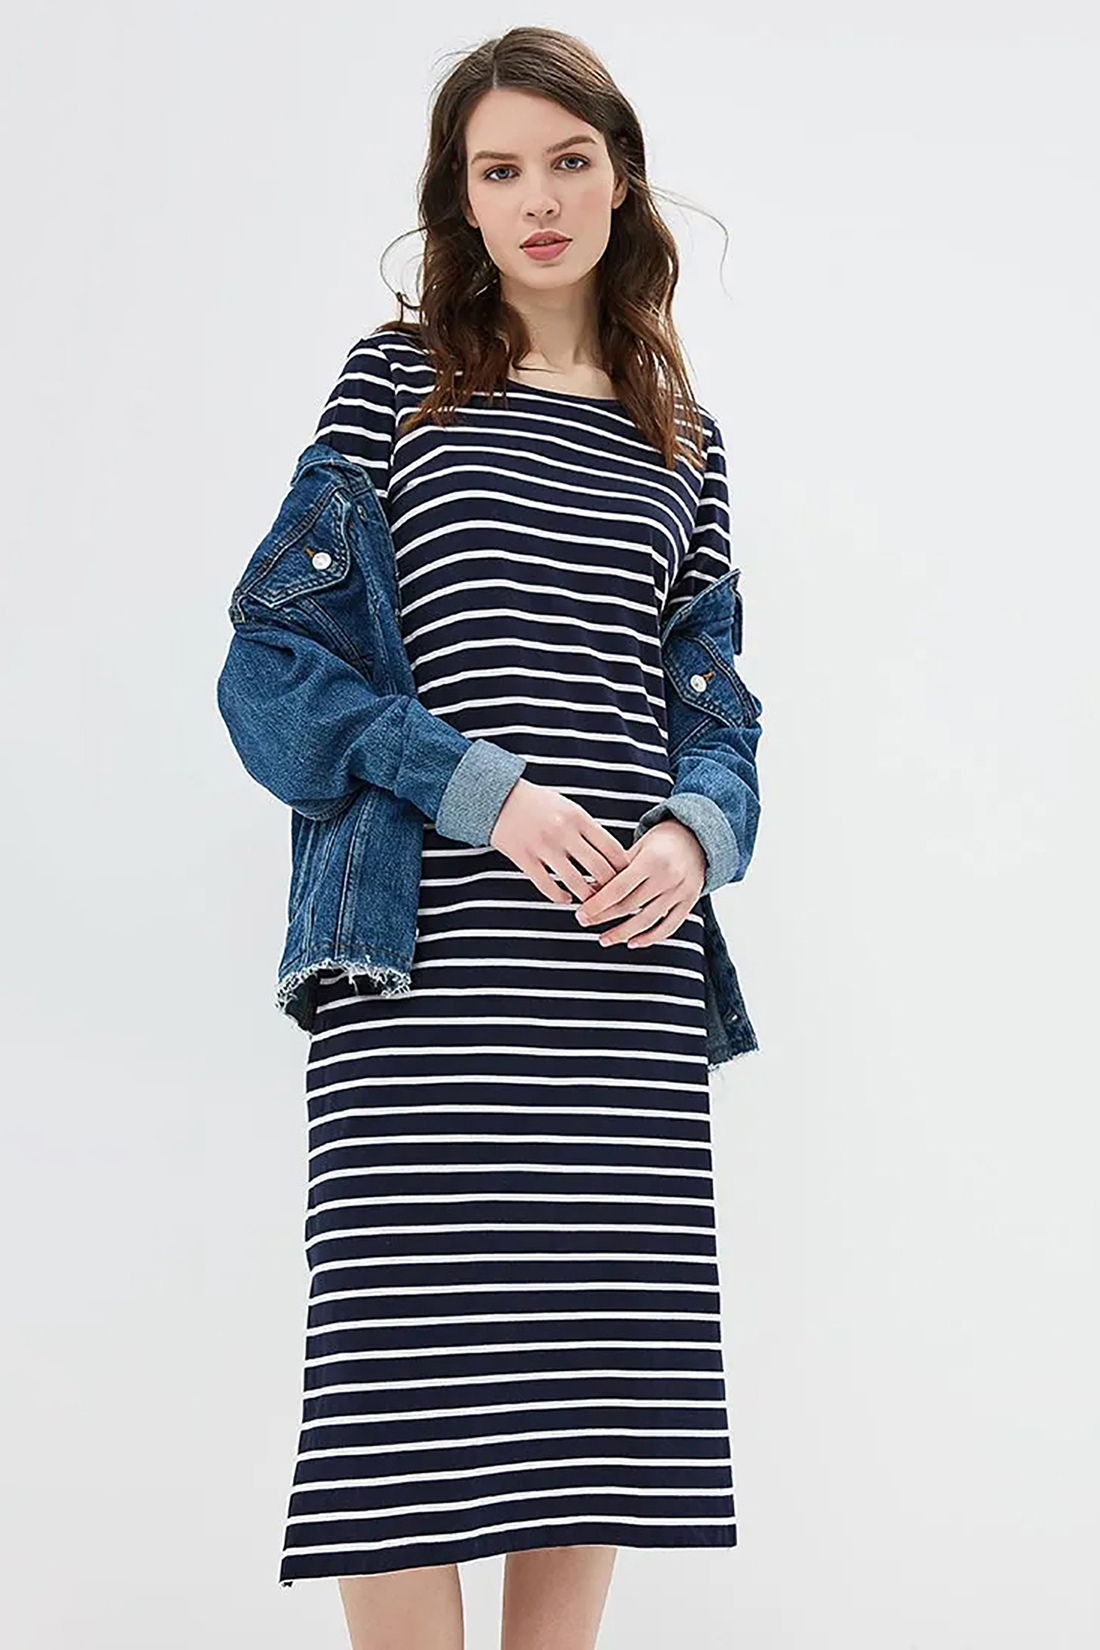 Миди-платье в полоску (арт. baon B459106), размер XS, цвет dark navy striped#синий Миди-платье в полоску (арт. baon B459106) - фото 3